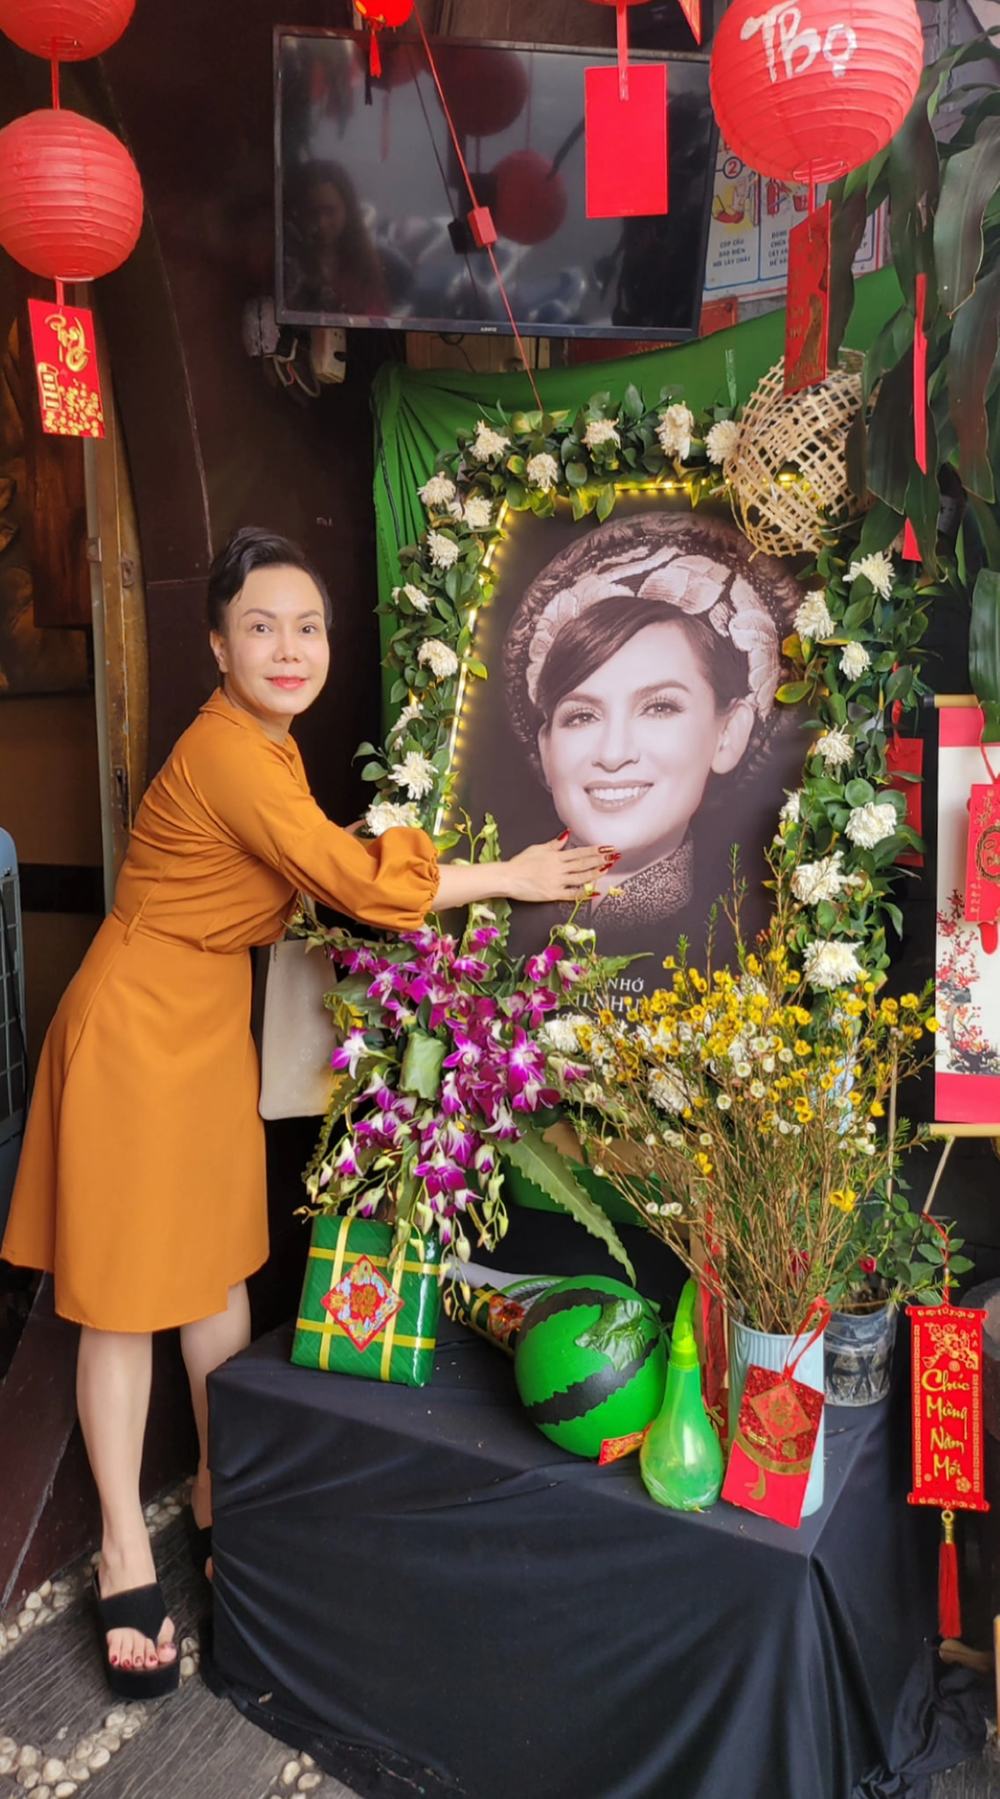 Chuyện làng sao - Việt Hương đến nhà hàng cố ca sĩ Phi Nhung, tiết lộ câu nói gây xúc động